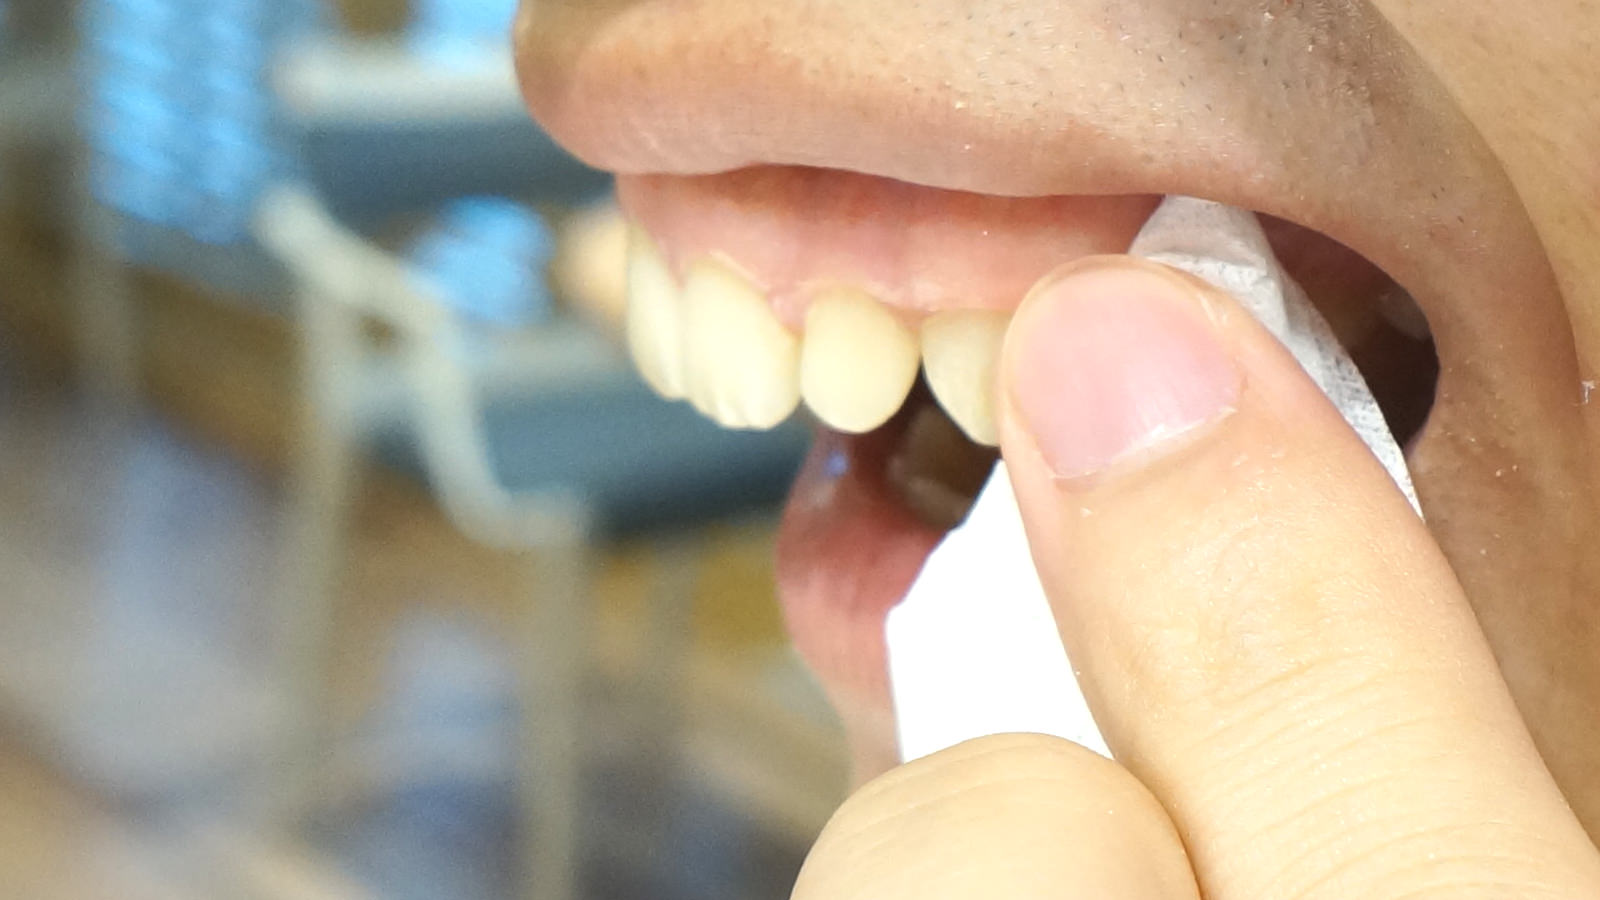 簡単に歯を白くする方法 簡単な裏ワザでホワイトニング!? 自分でできる、歯を白く健康的にみせる方法